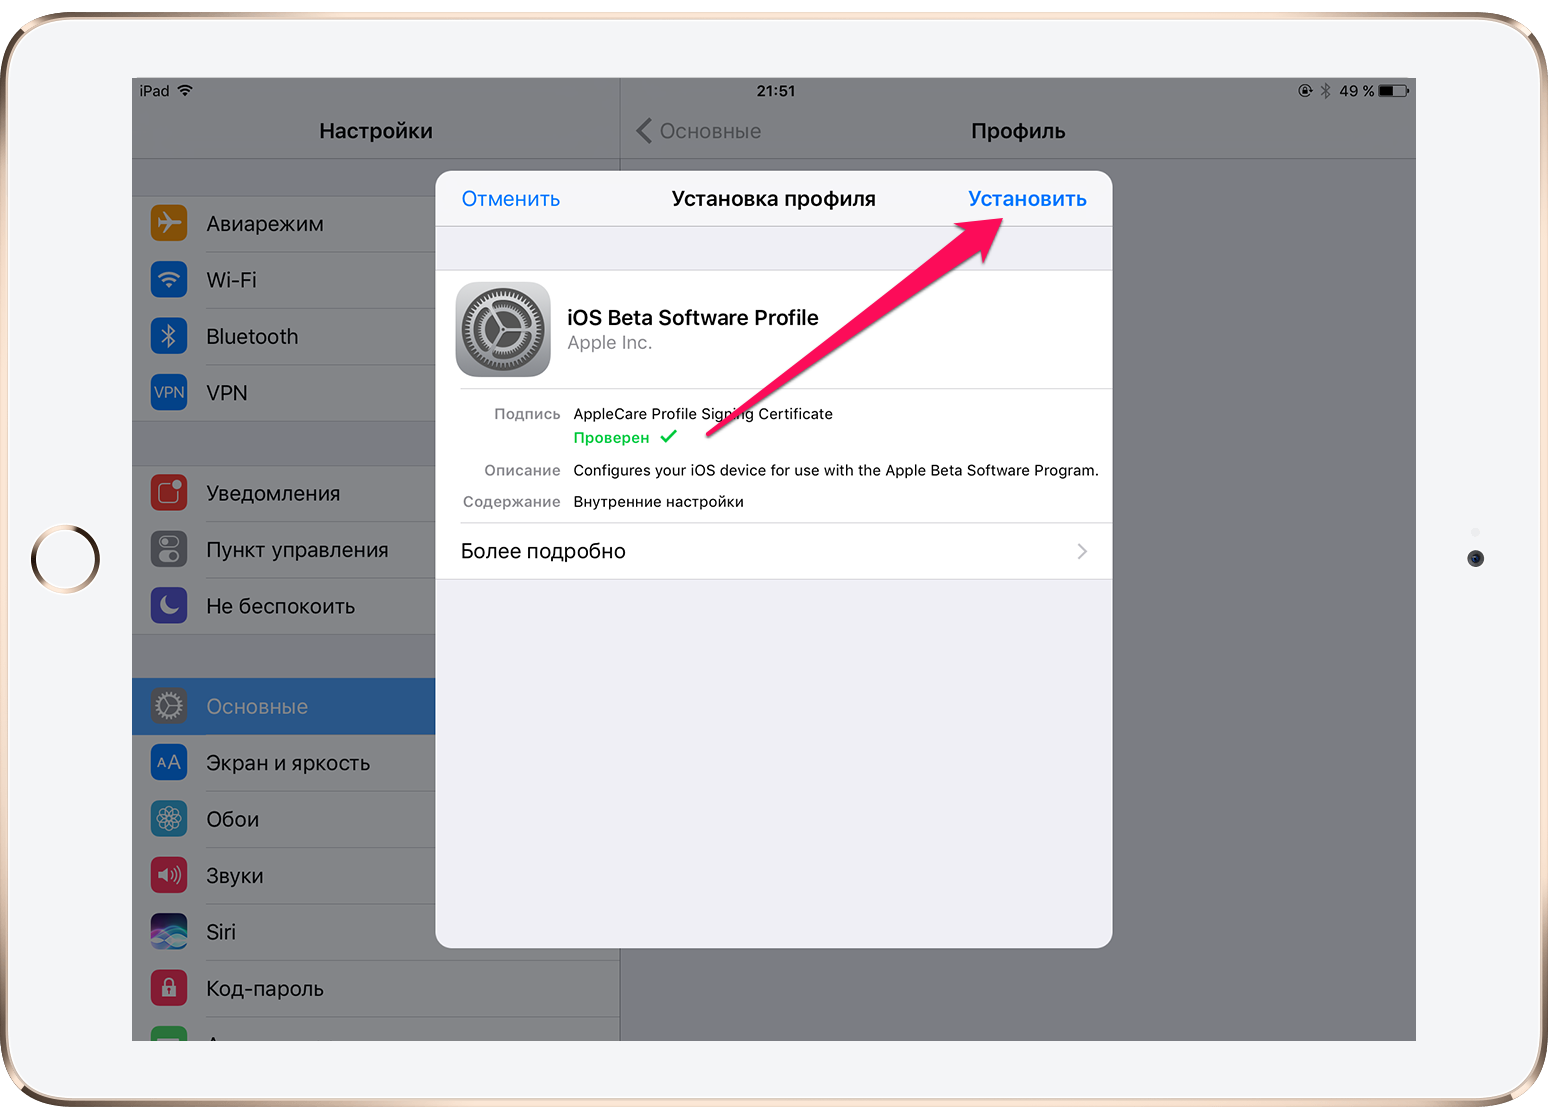 Вышла GM версия iOS 11 — как установить